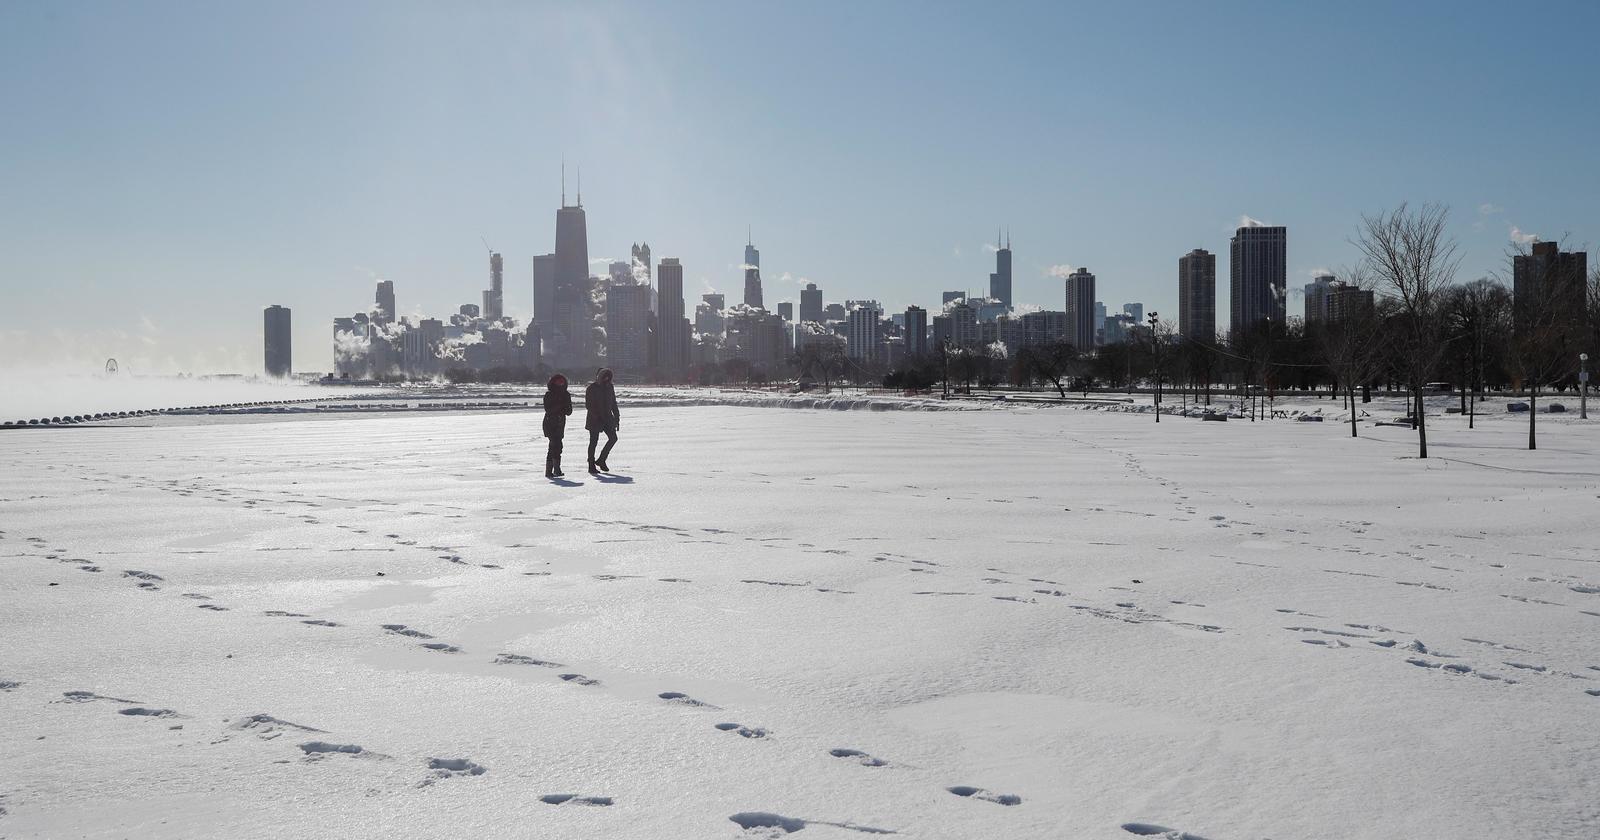 Río congelado. Una pareja camina por el ríoMississippi congelado, en Chicago, Illinois. (EFE)